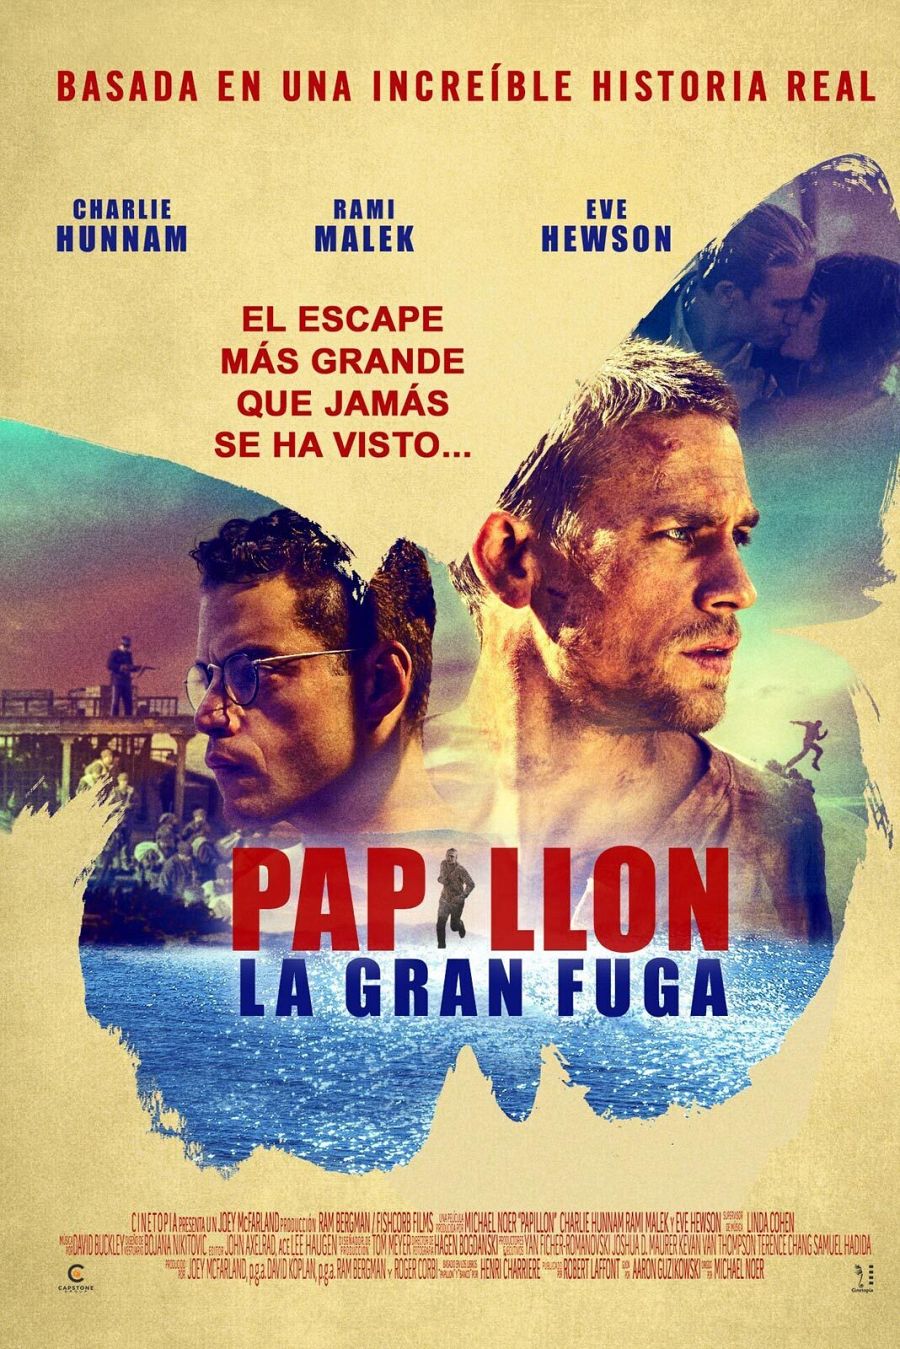 Película 'Papillon' (2017), basada en hechos reales